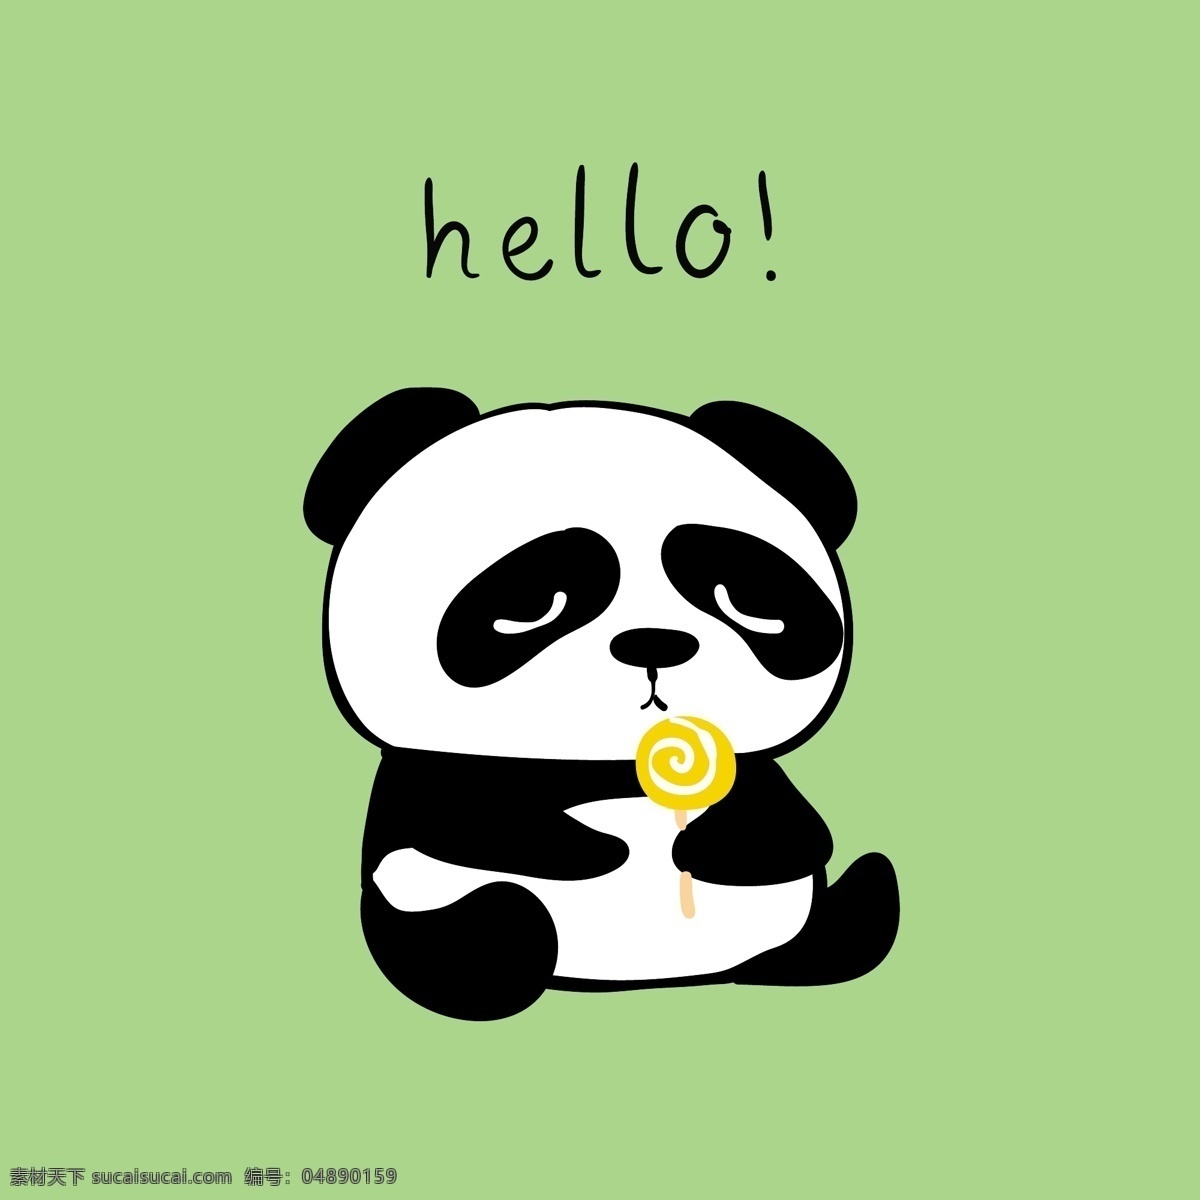 懒惰 小熊猫 卡通 动物 黑白 平面素材 设计素材 生活 矢量素材 温暖 熊猫 艺术